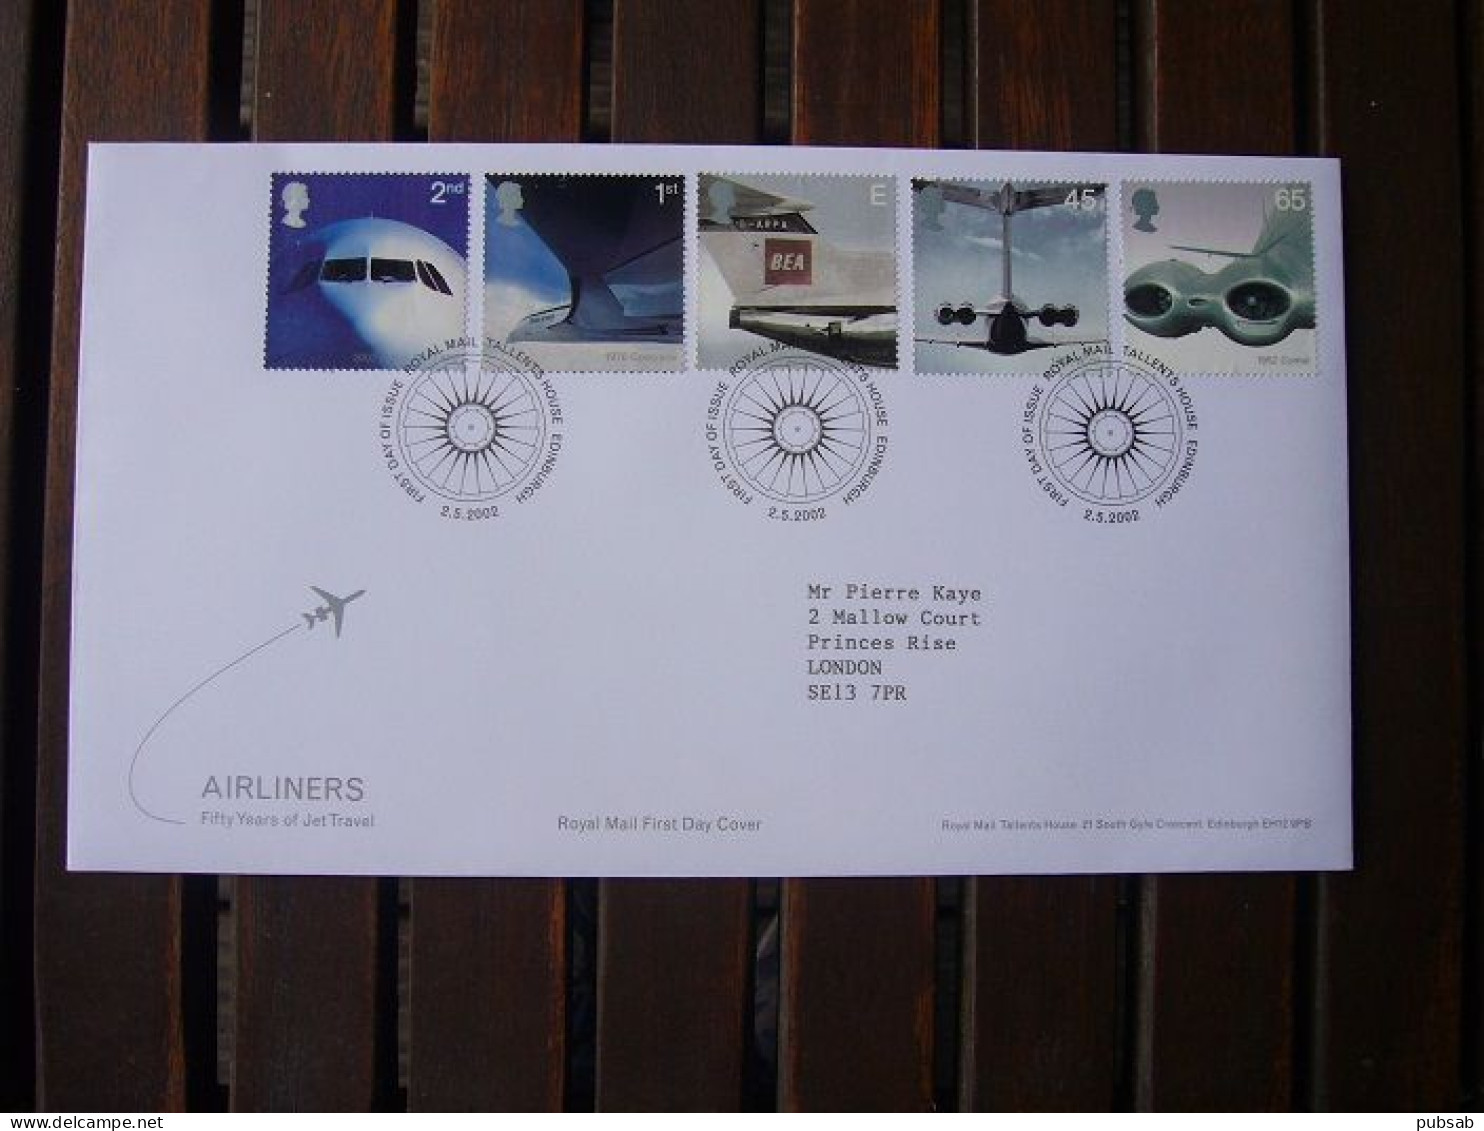 Avion / Airplane / BRITISH AIRWAYS / Airbus - Concorde - Trident - VC-10 - Comet / May 2,2002 - 2001-10 Ediciones Decimales